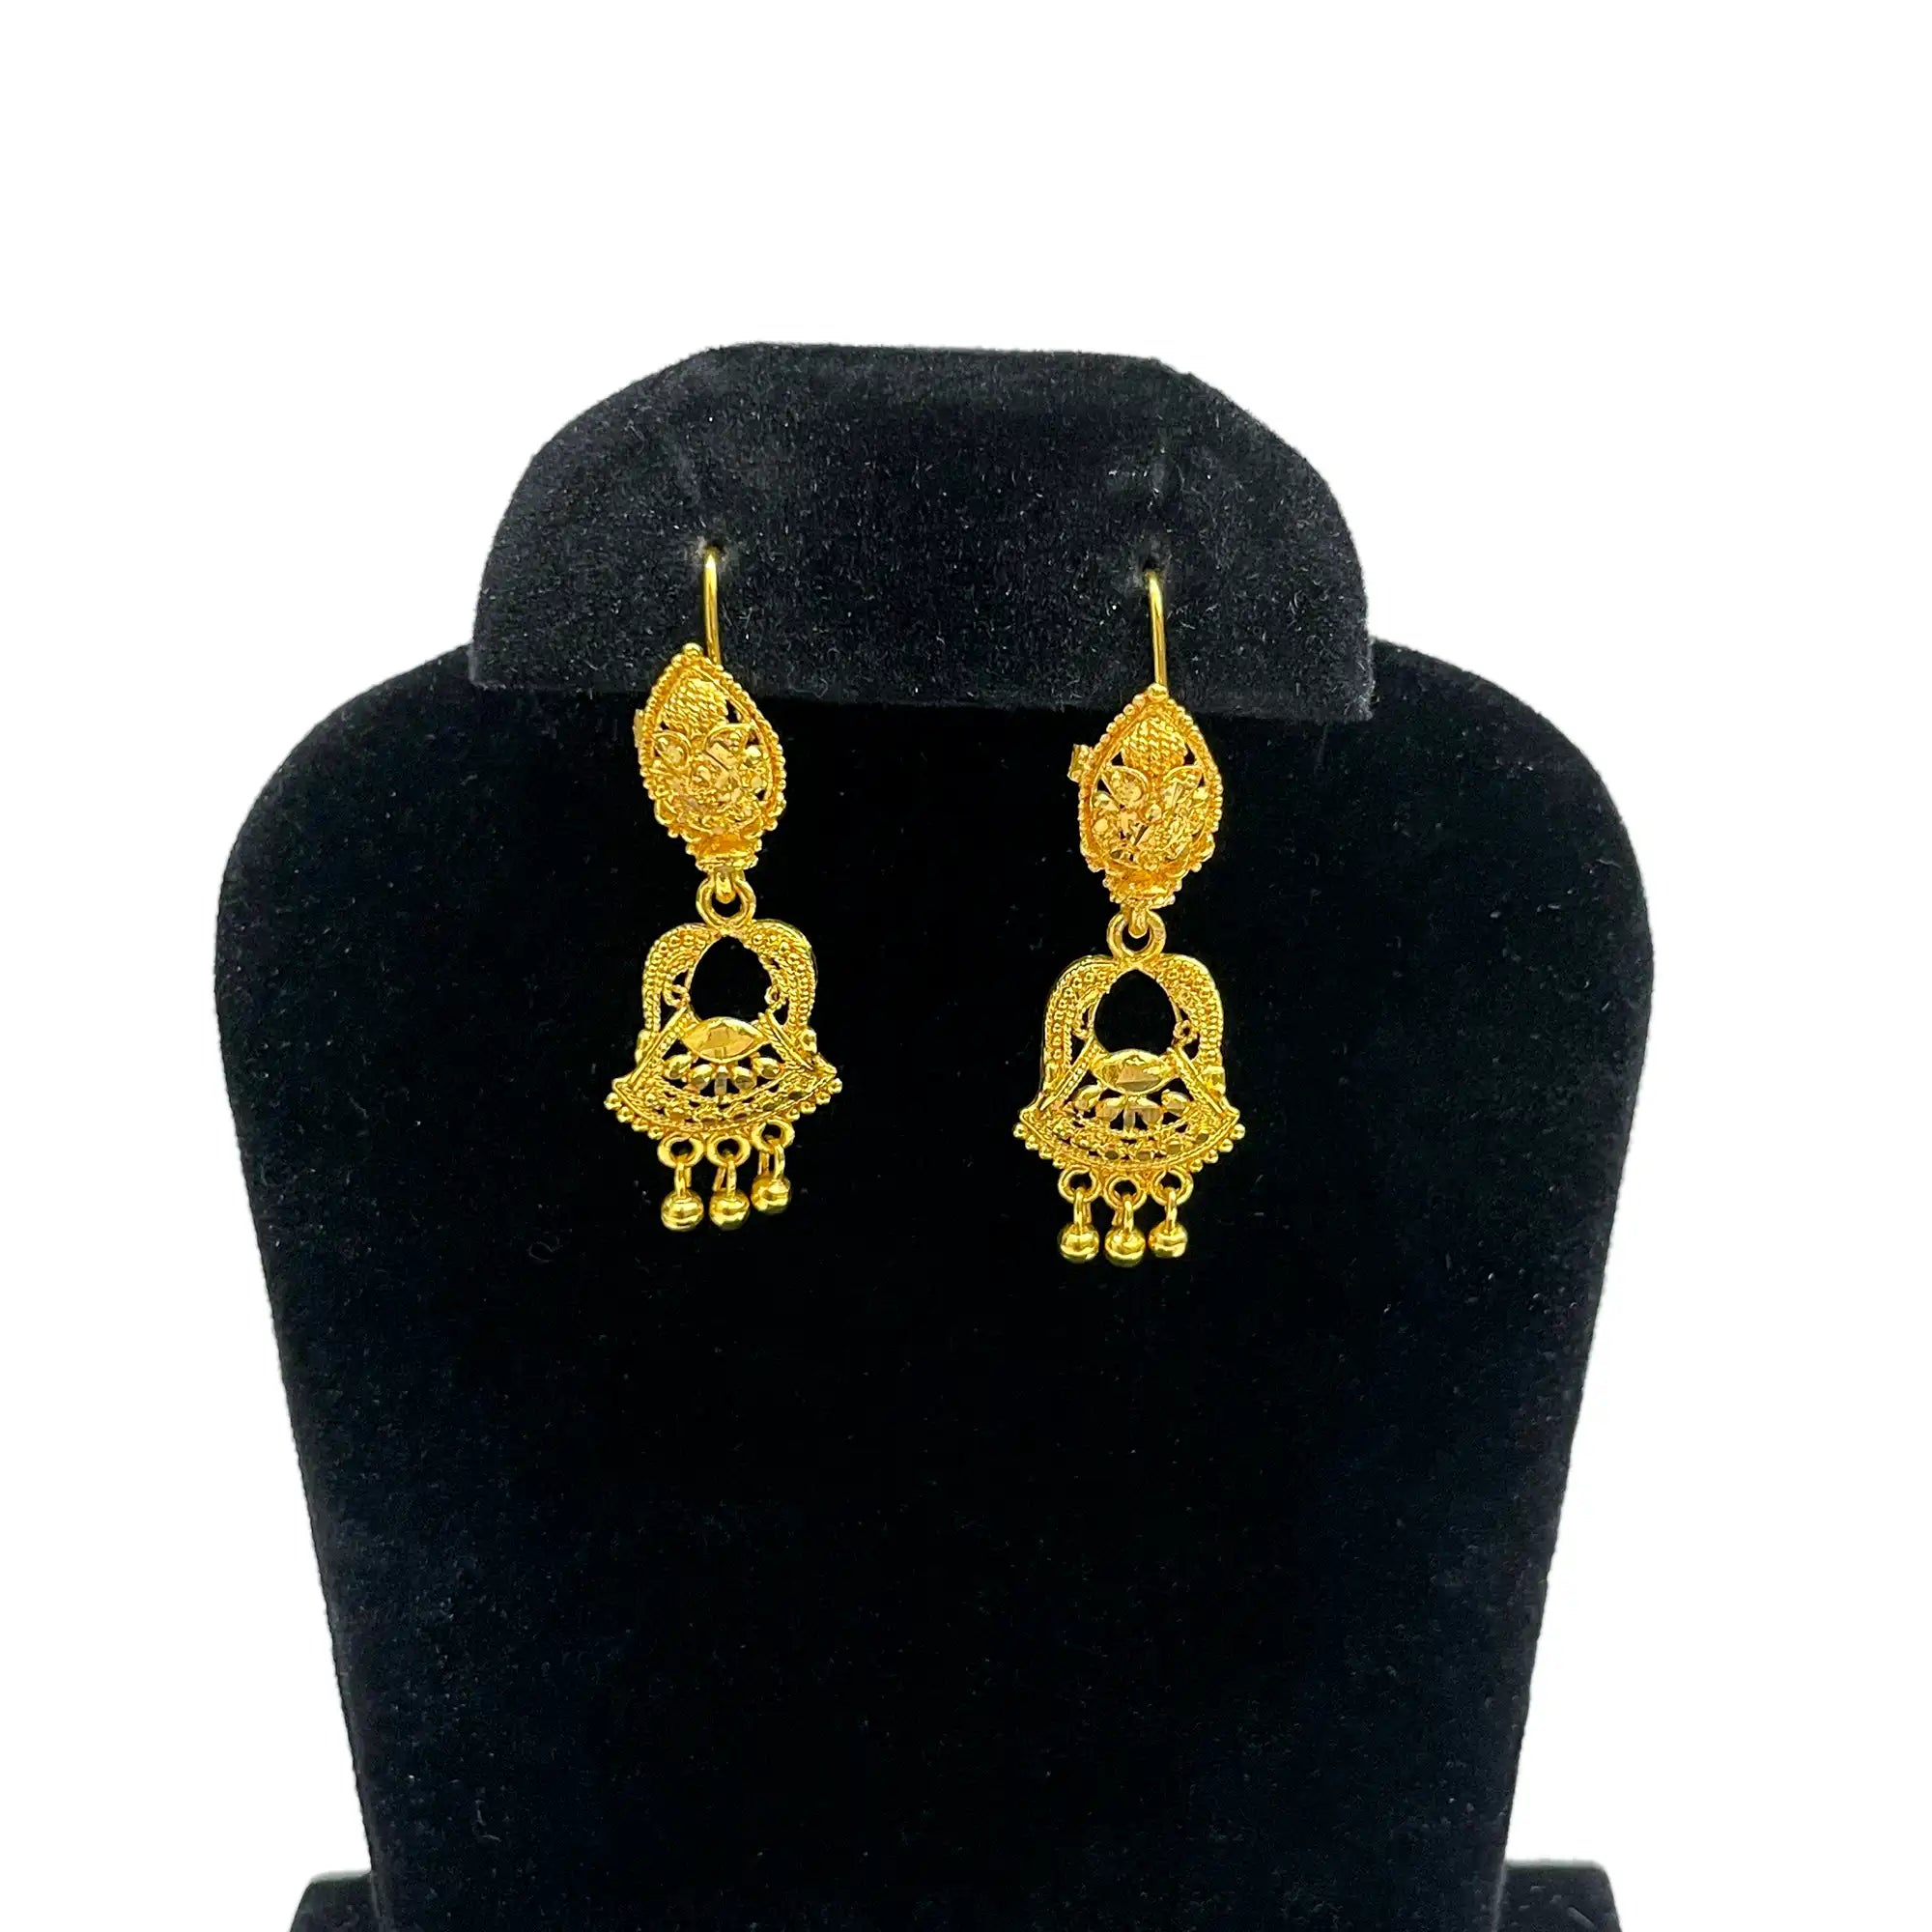 jhumka earrings, statement earrings, punjabi earrings, indian jewelry